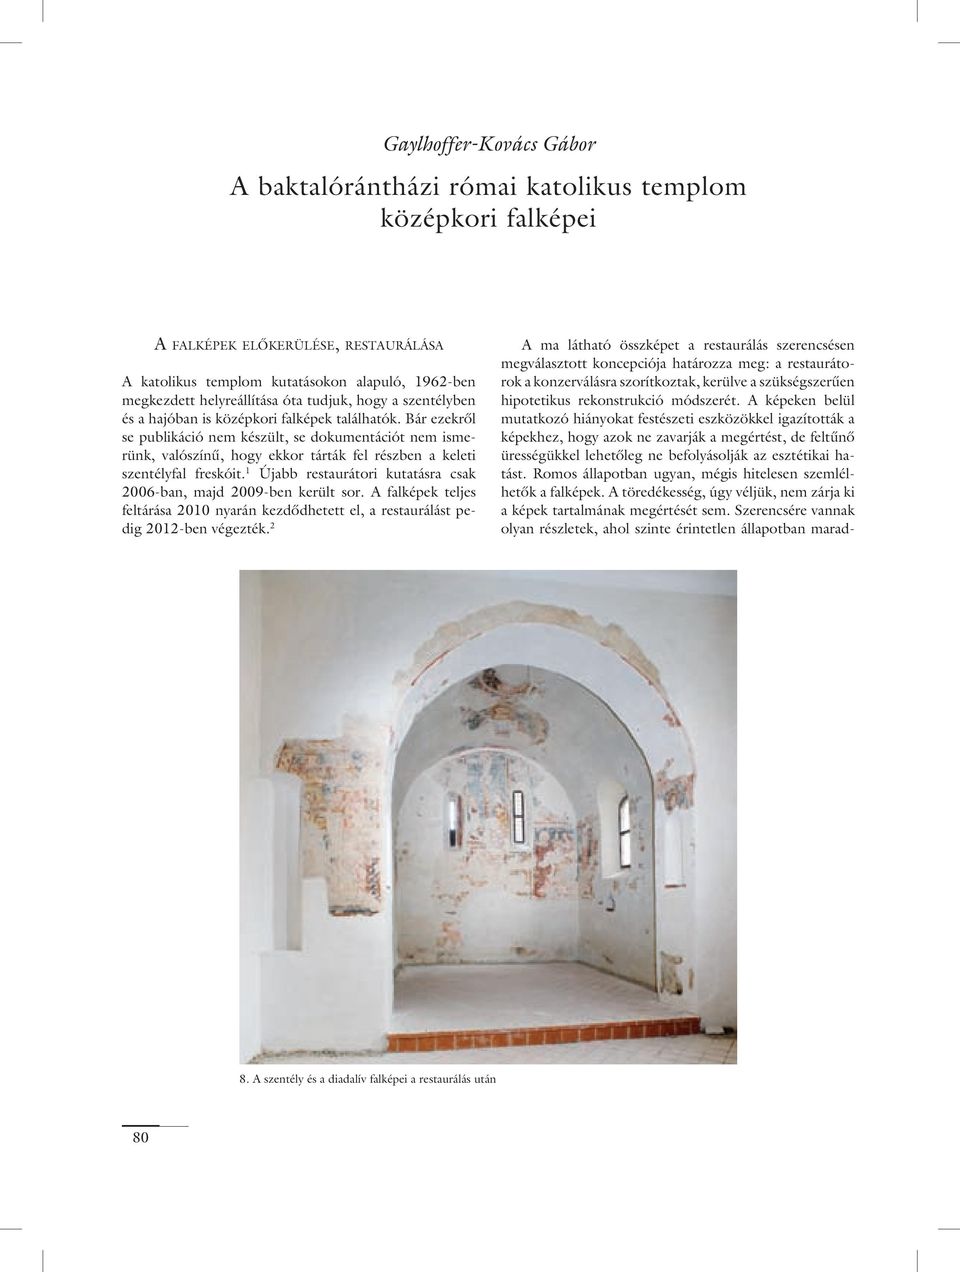 Bár ezekrôl se publikáció nem készült, se dokumentációt nem ismerünk, valószínû, hogy ekkor tárták fel részben a keleti szentélyfal freskóit.